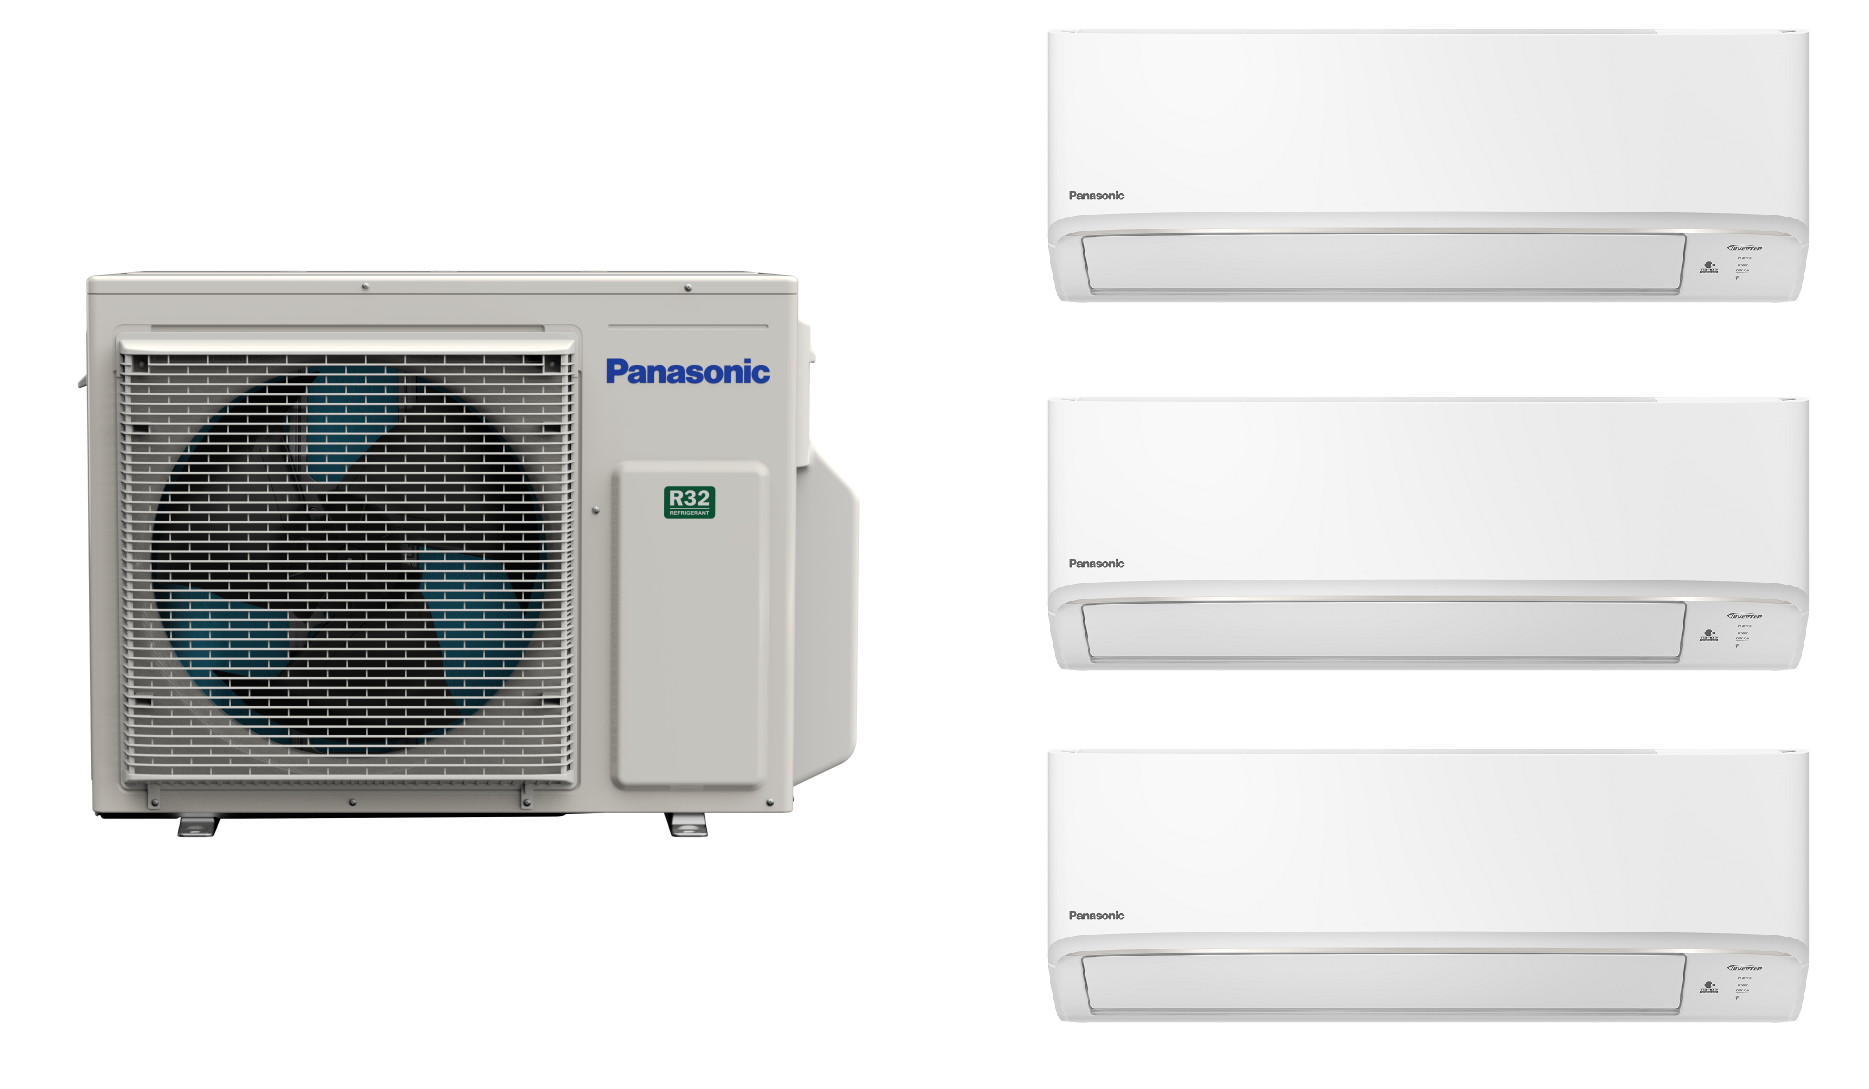 Hệ Thống Máy Lạnh Multi Split Panasonic Inverter Combo Công suất 3HP + 03 dàn lạnh 1.0HP - Hàng Chính Hãng